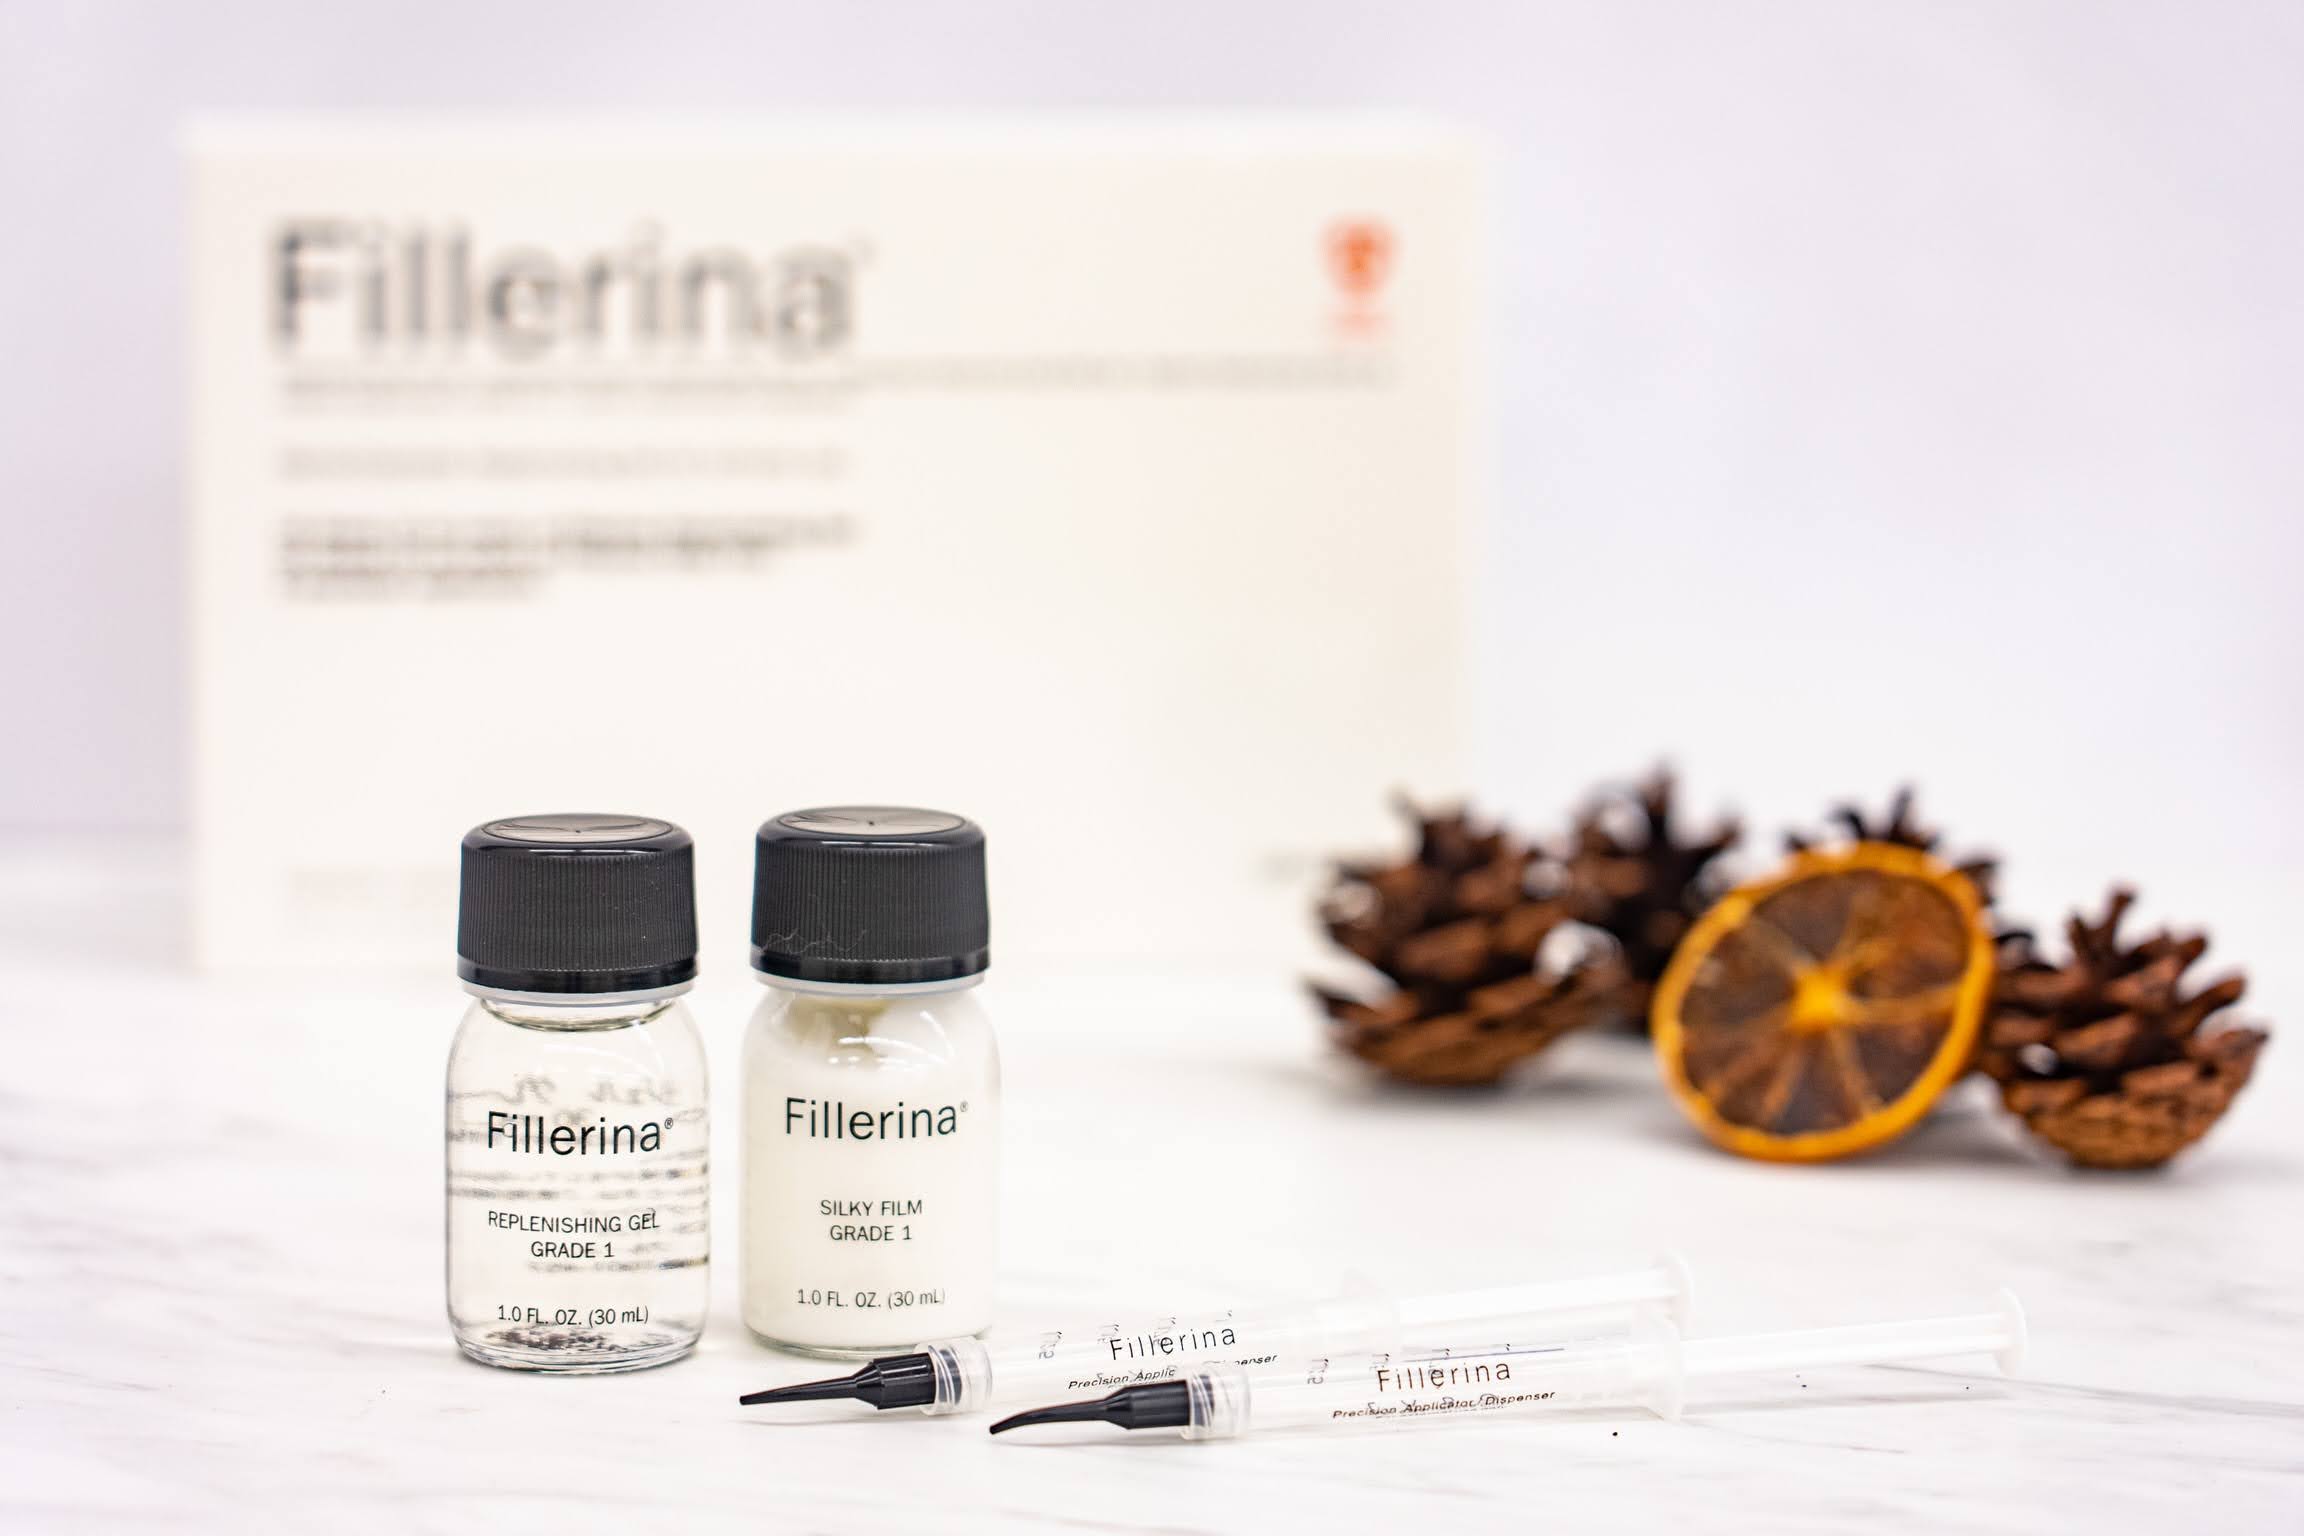 リプレニッシング トリートメント Grade 1 | Fillerina（フィレリーナ